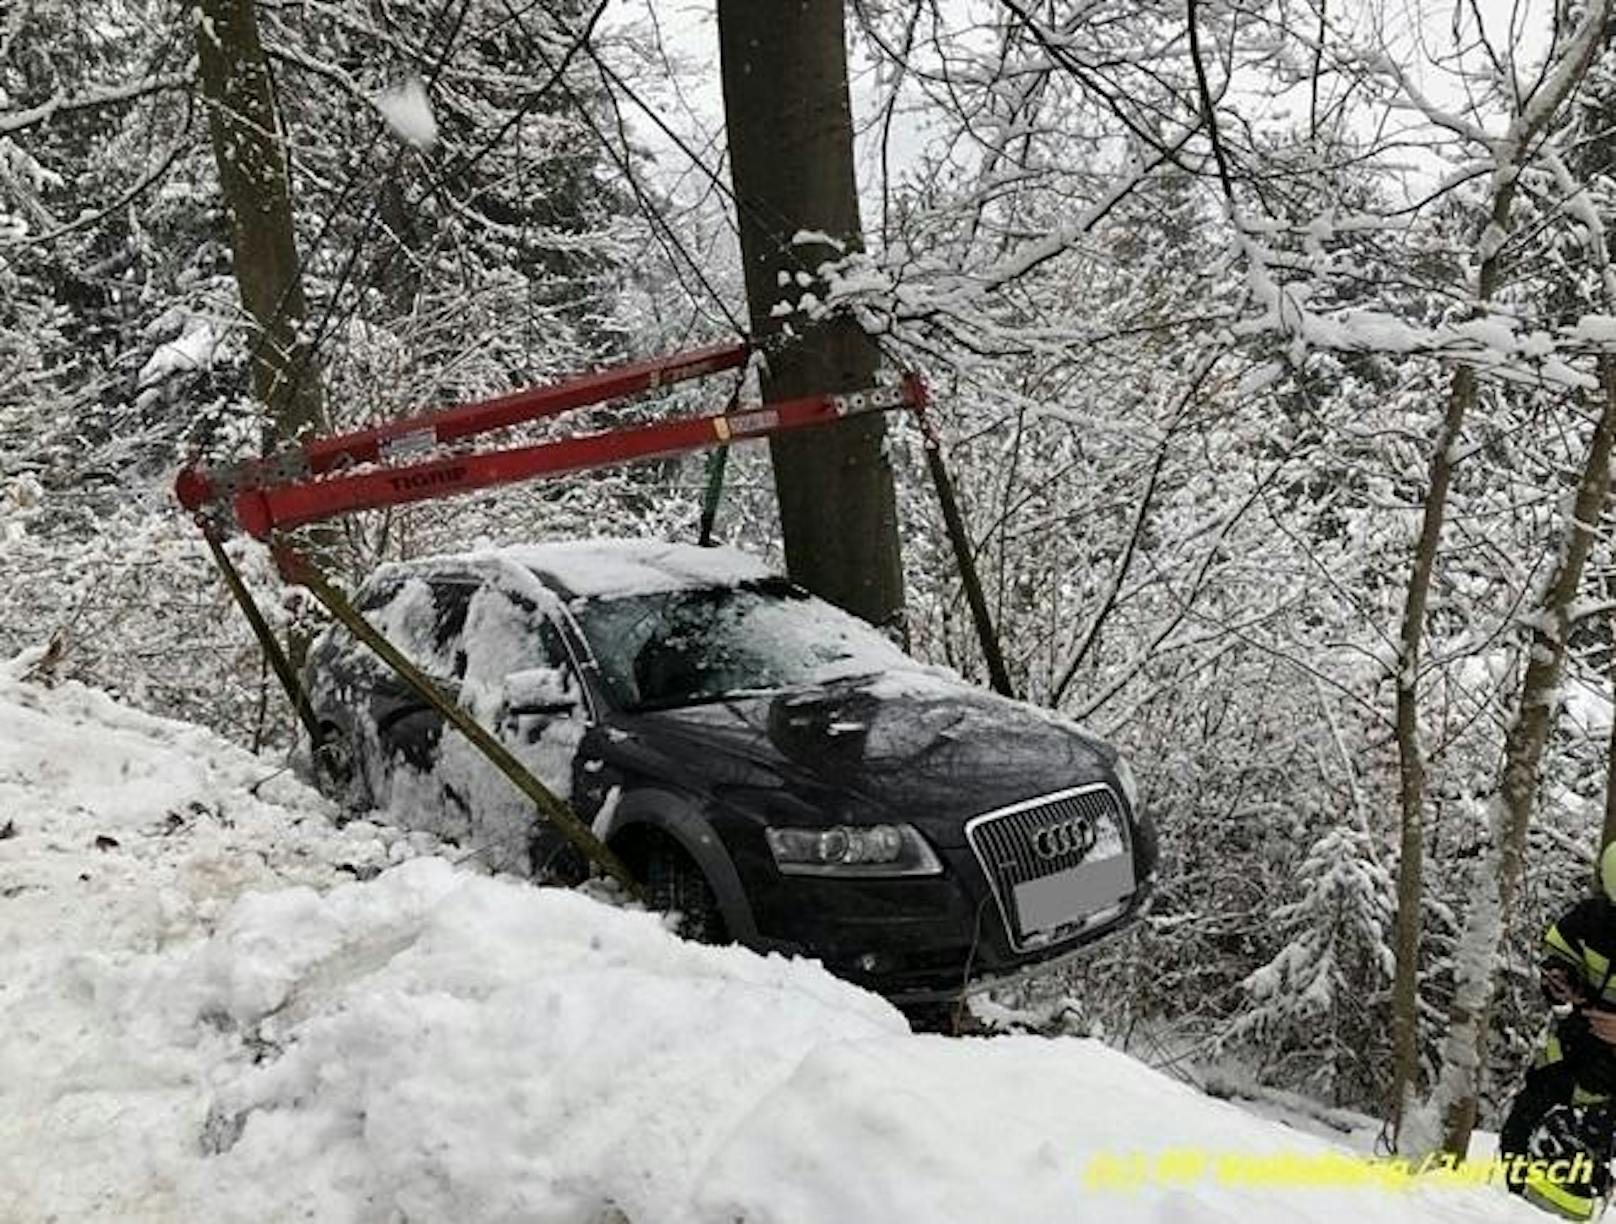 Der Audi rutschte von der Straße und blieb in einem Baum hängen